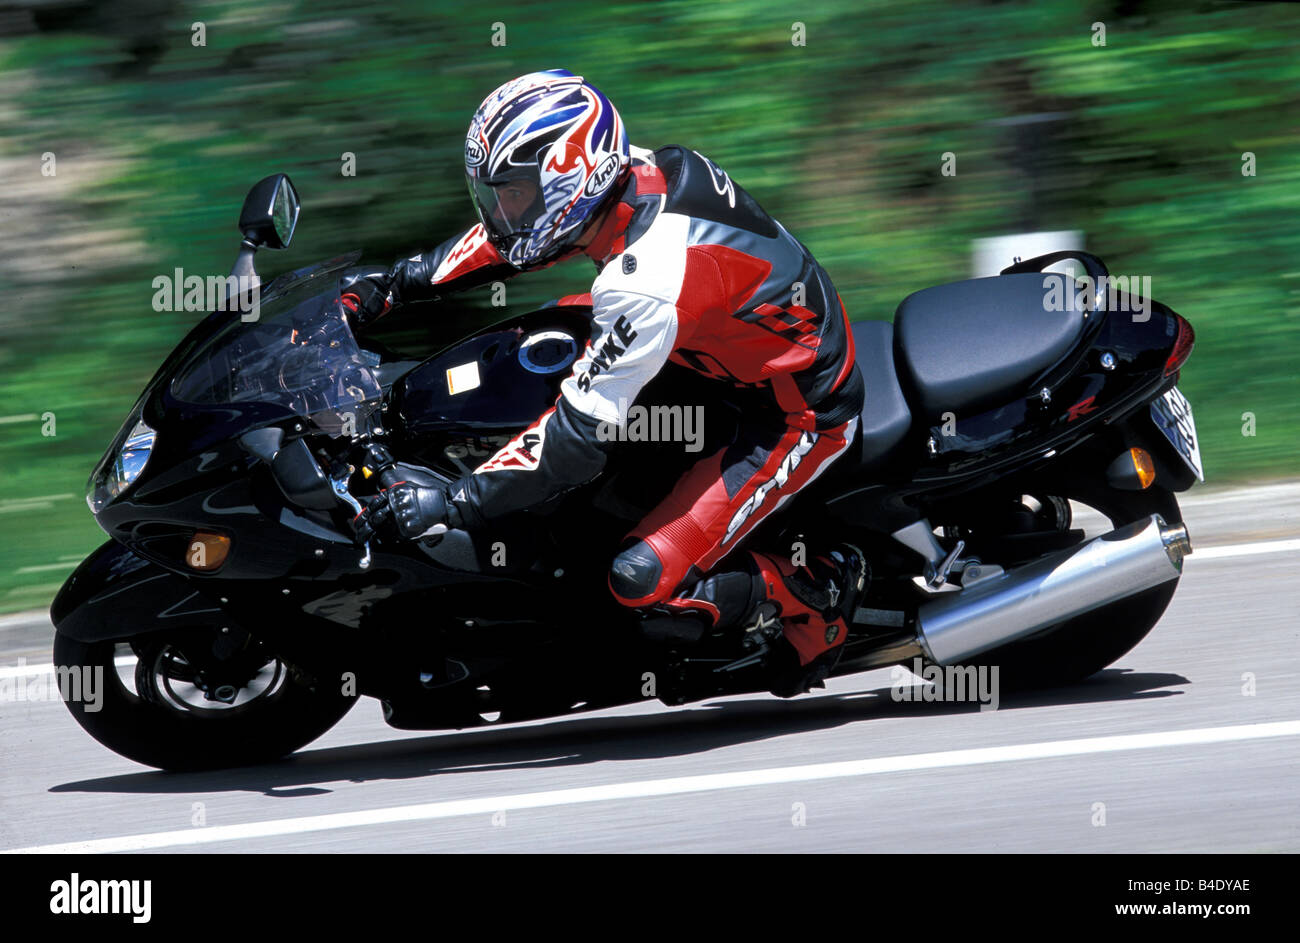 Motor Cycle, Sport Motorrad, Sportler, Suzuki GSX 1300 R Hayabusa, schwarz,  Modelljahr 2003, fahren, Schräglage, Sid Stockfotografie - Alamy